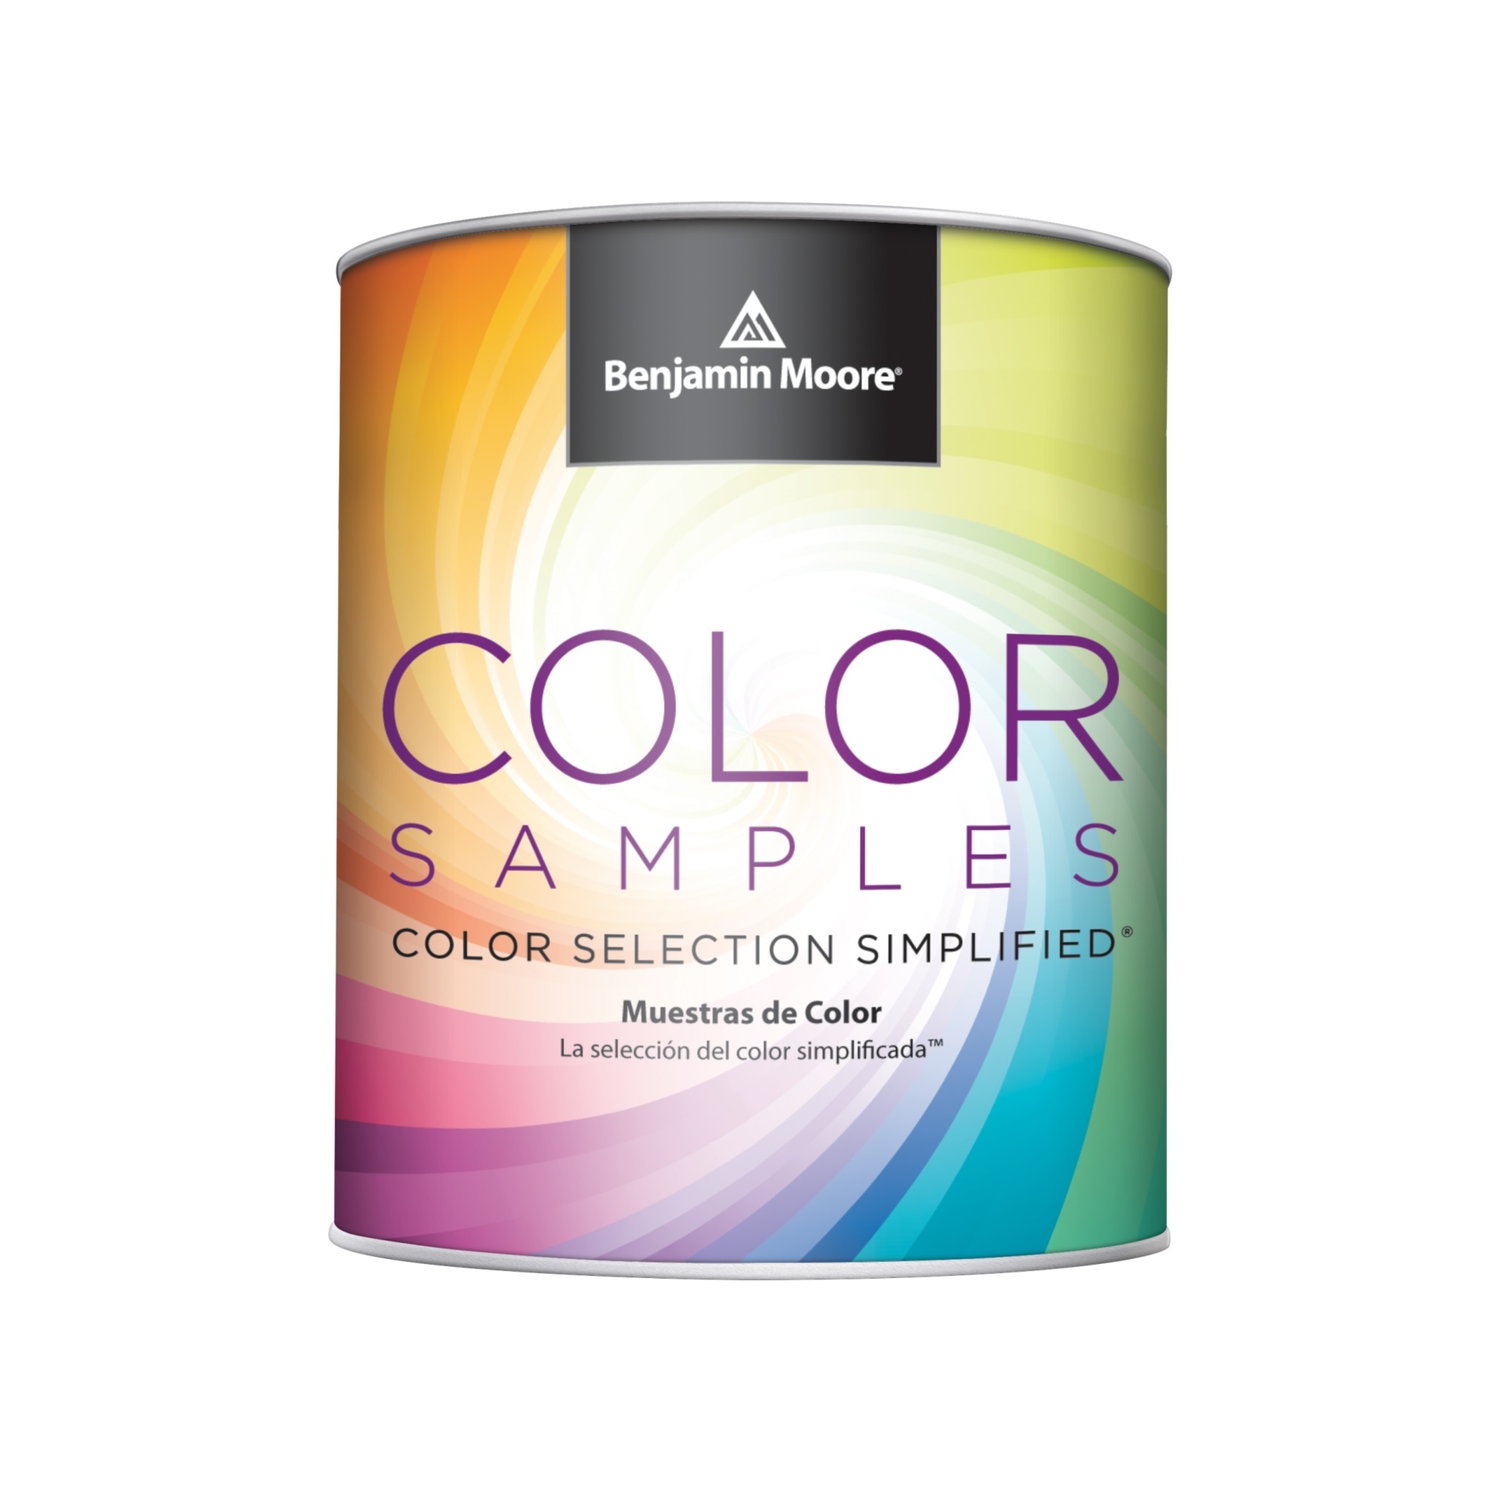 Benjamin Moore Benjamin Moore Color Samples Eggshell Base 4 Alkyd/Styrene Acrylate Paint Sample